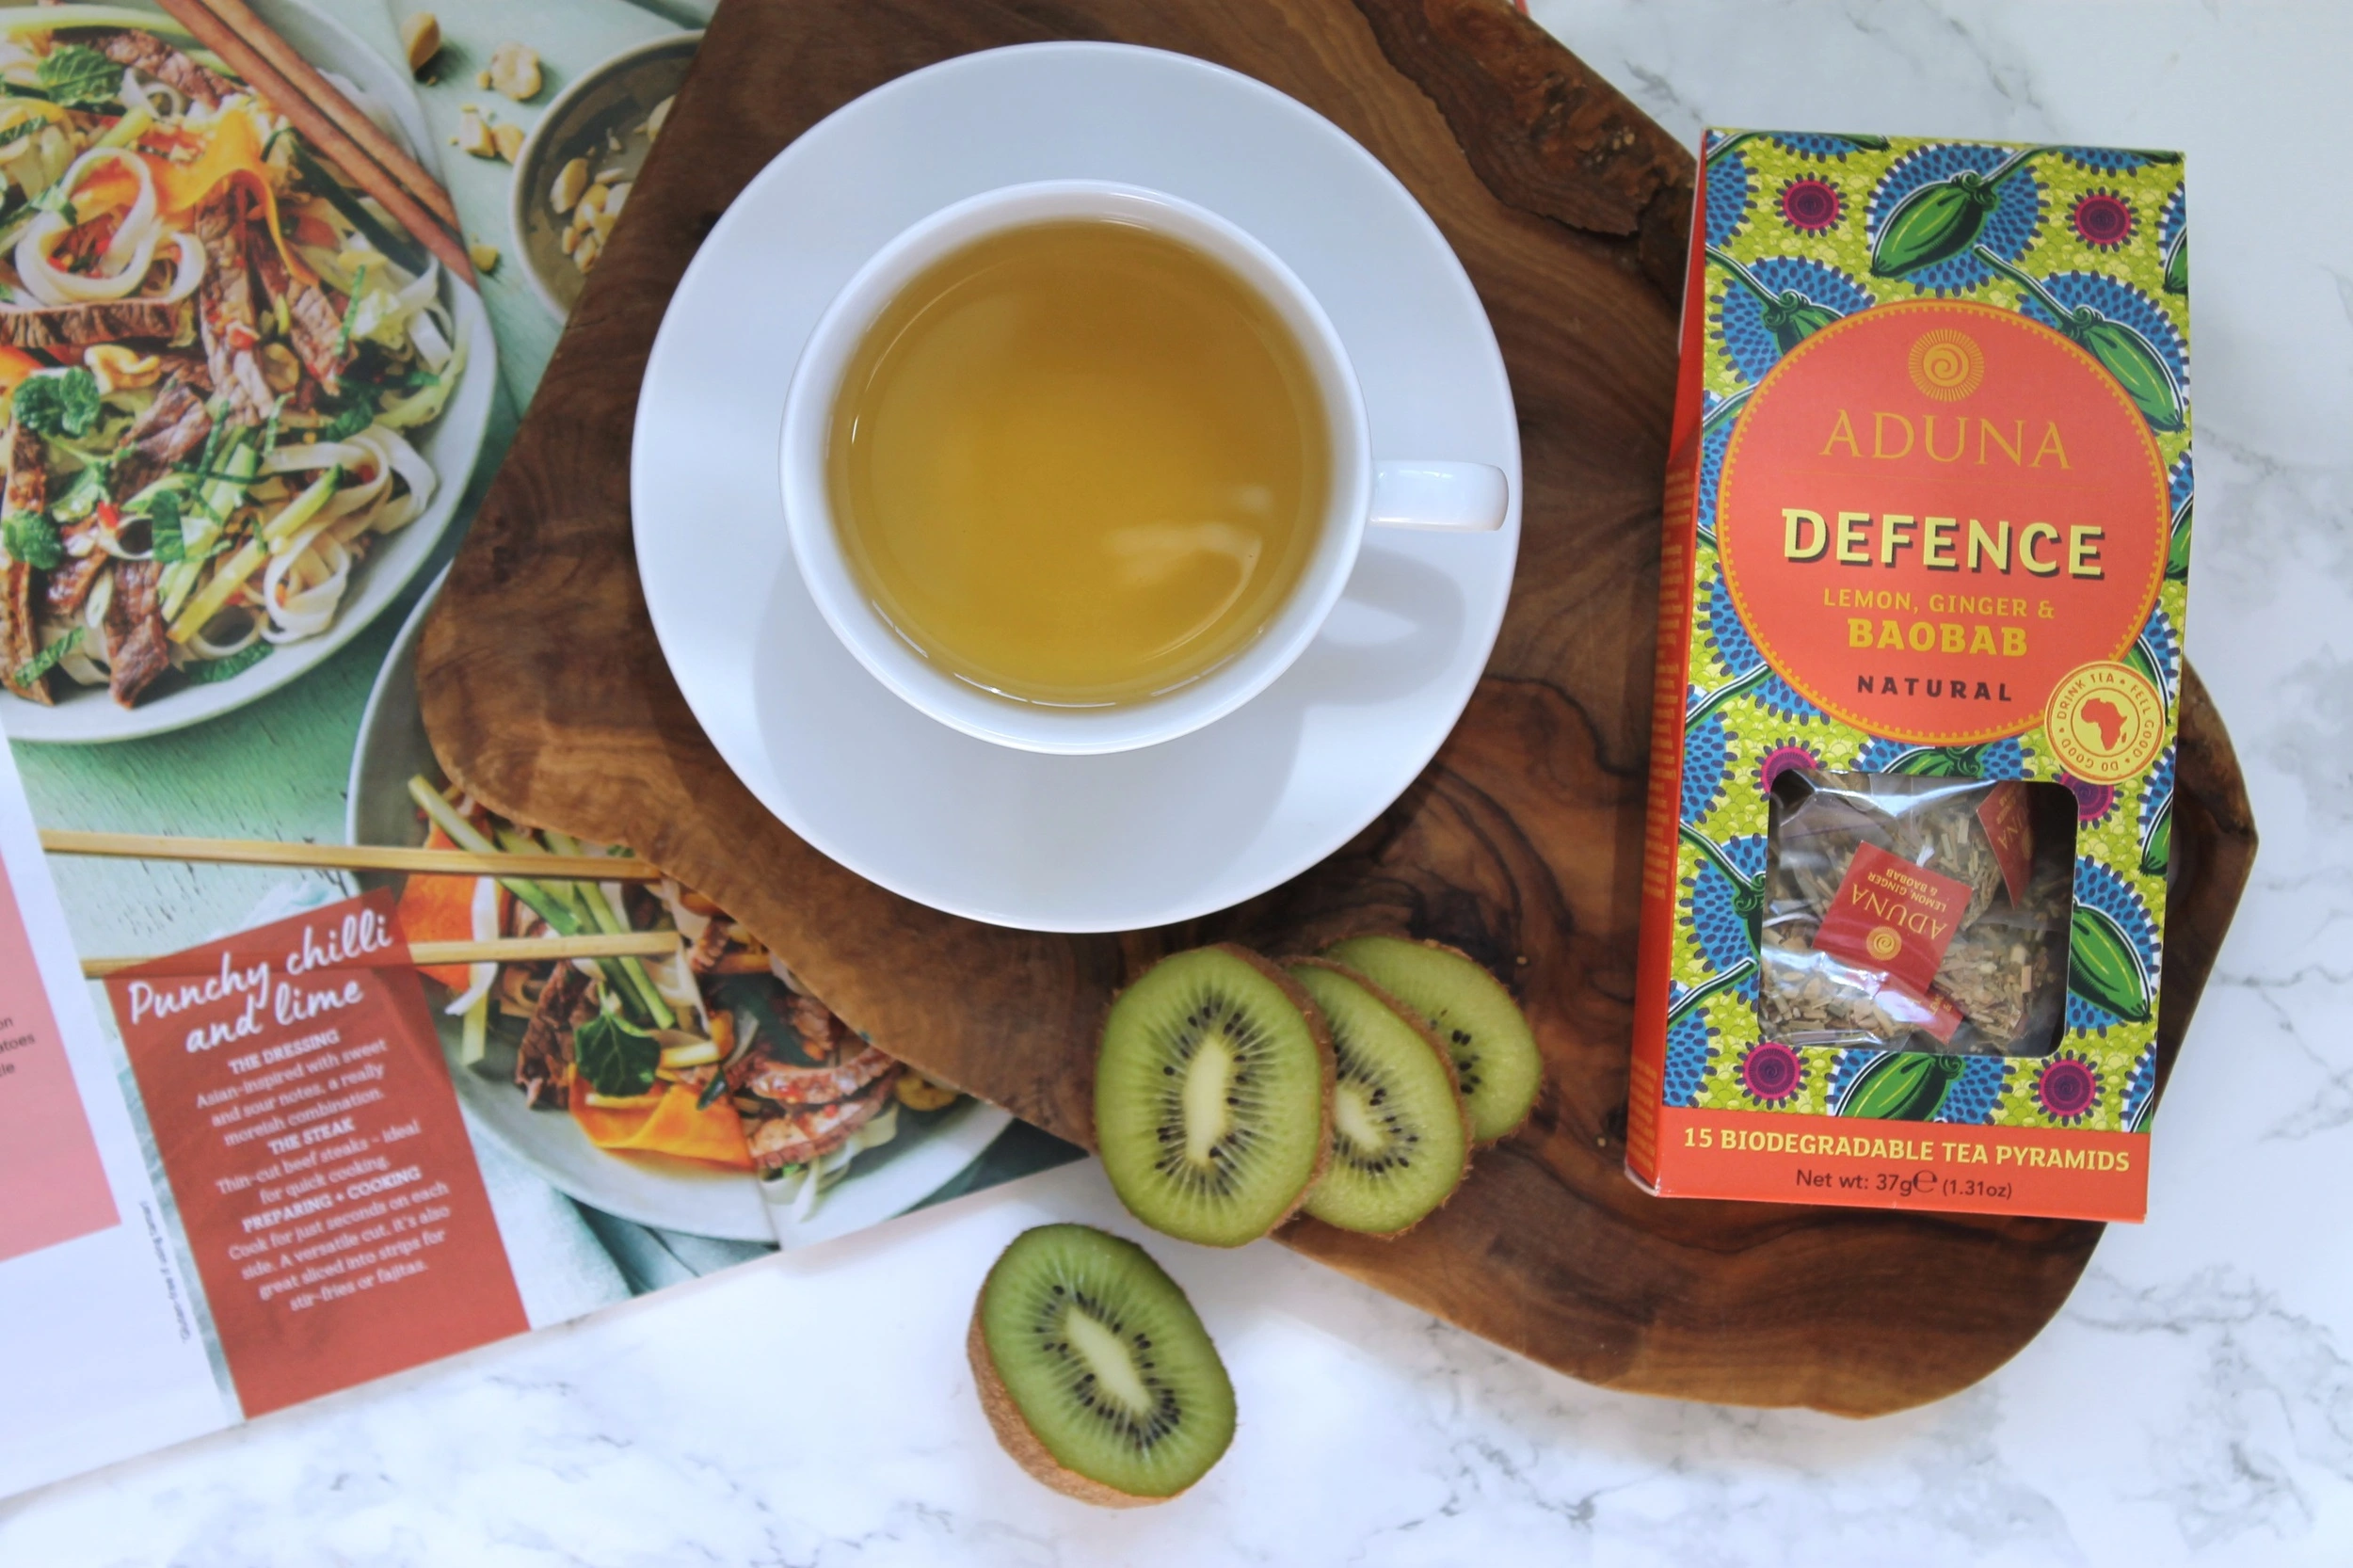 Aduna Lemon, Ginger and Baobab Defence Tea Review